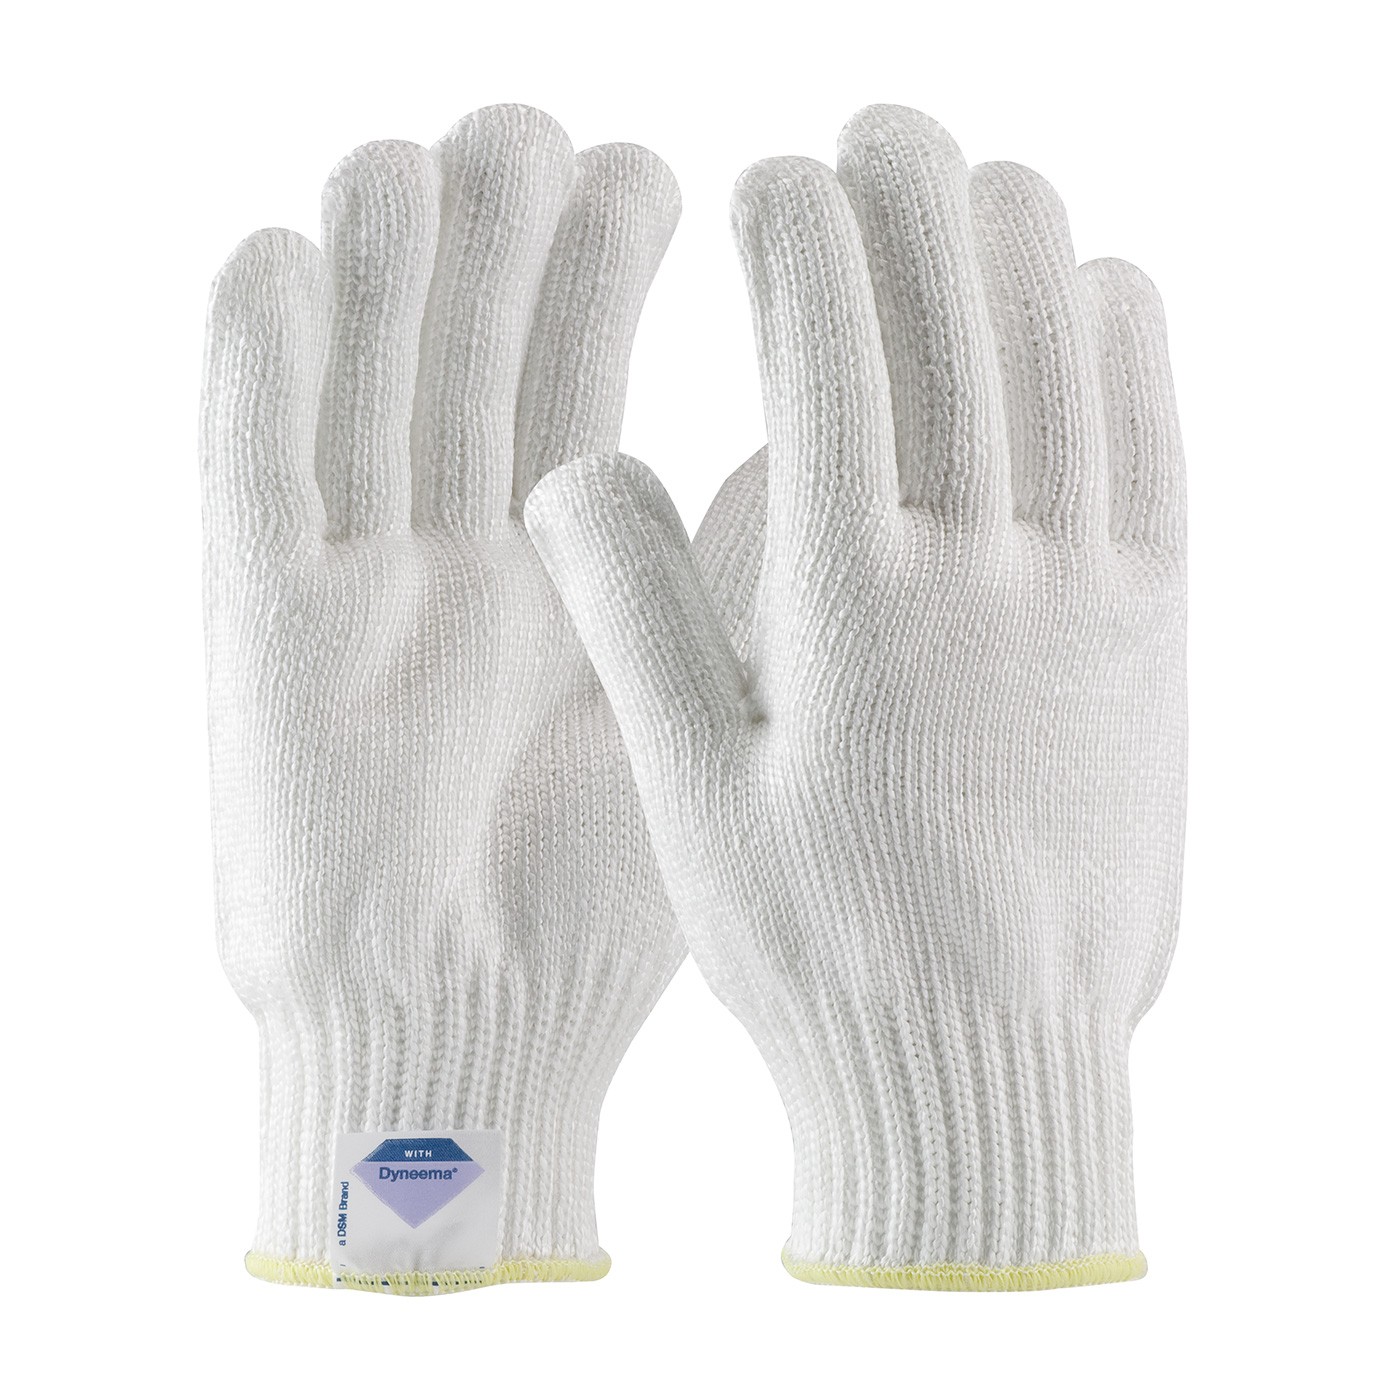 Kut Gard® Seamless Knit Dyneema® Glove - Heavy Weight  (#17-D350)